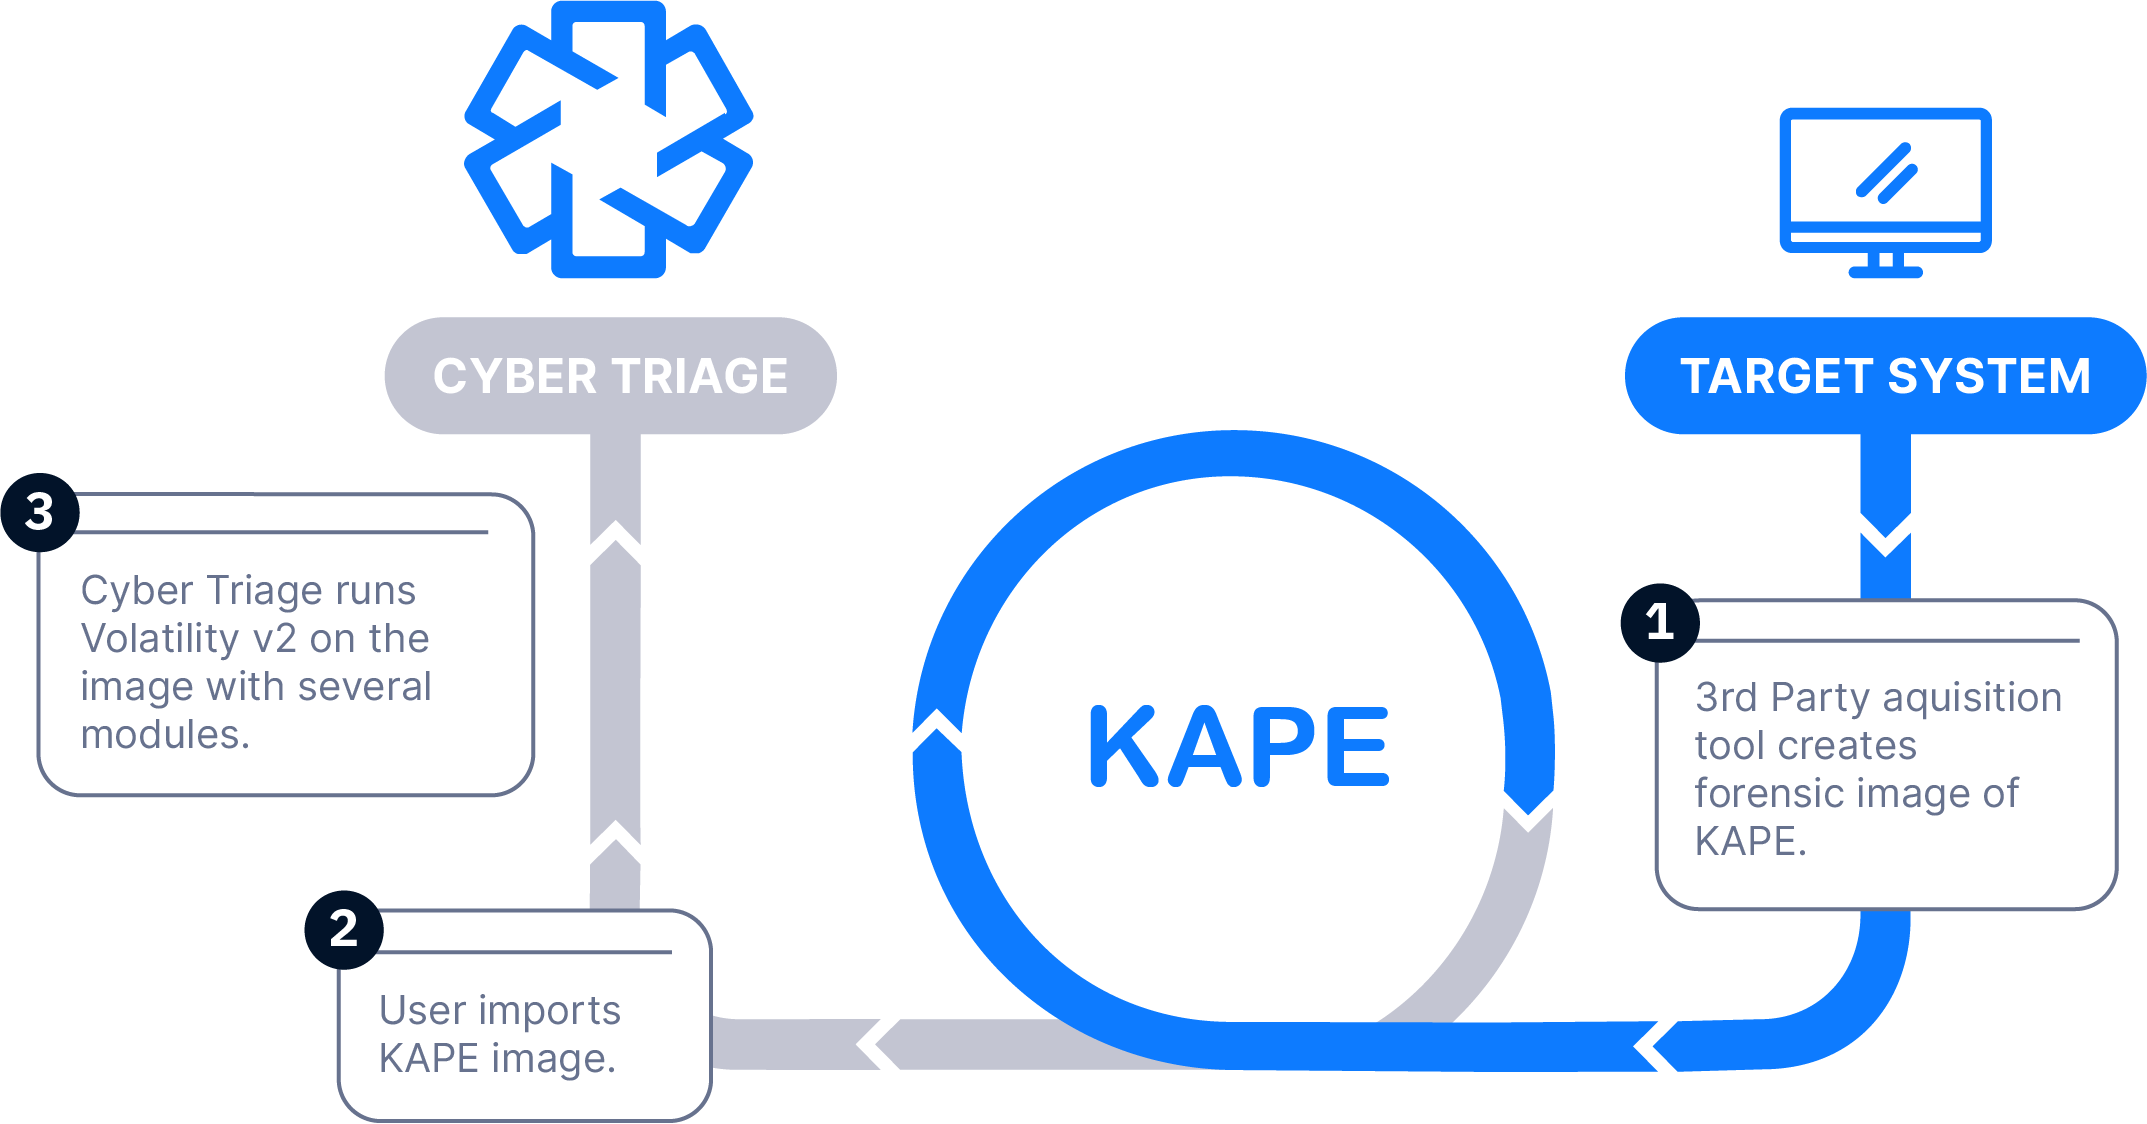 KAPE Collection Method